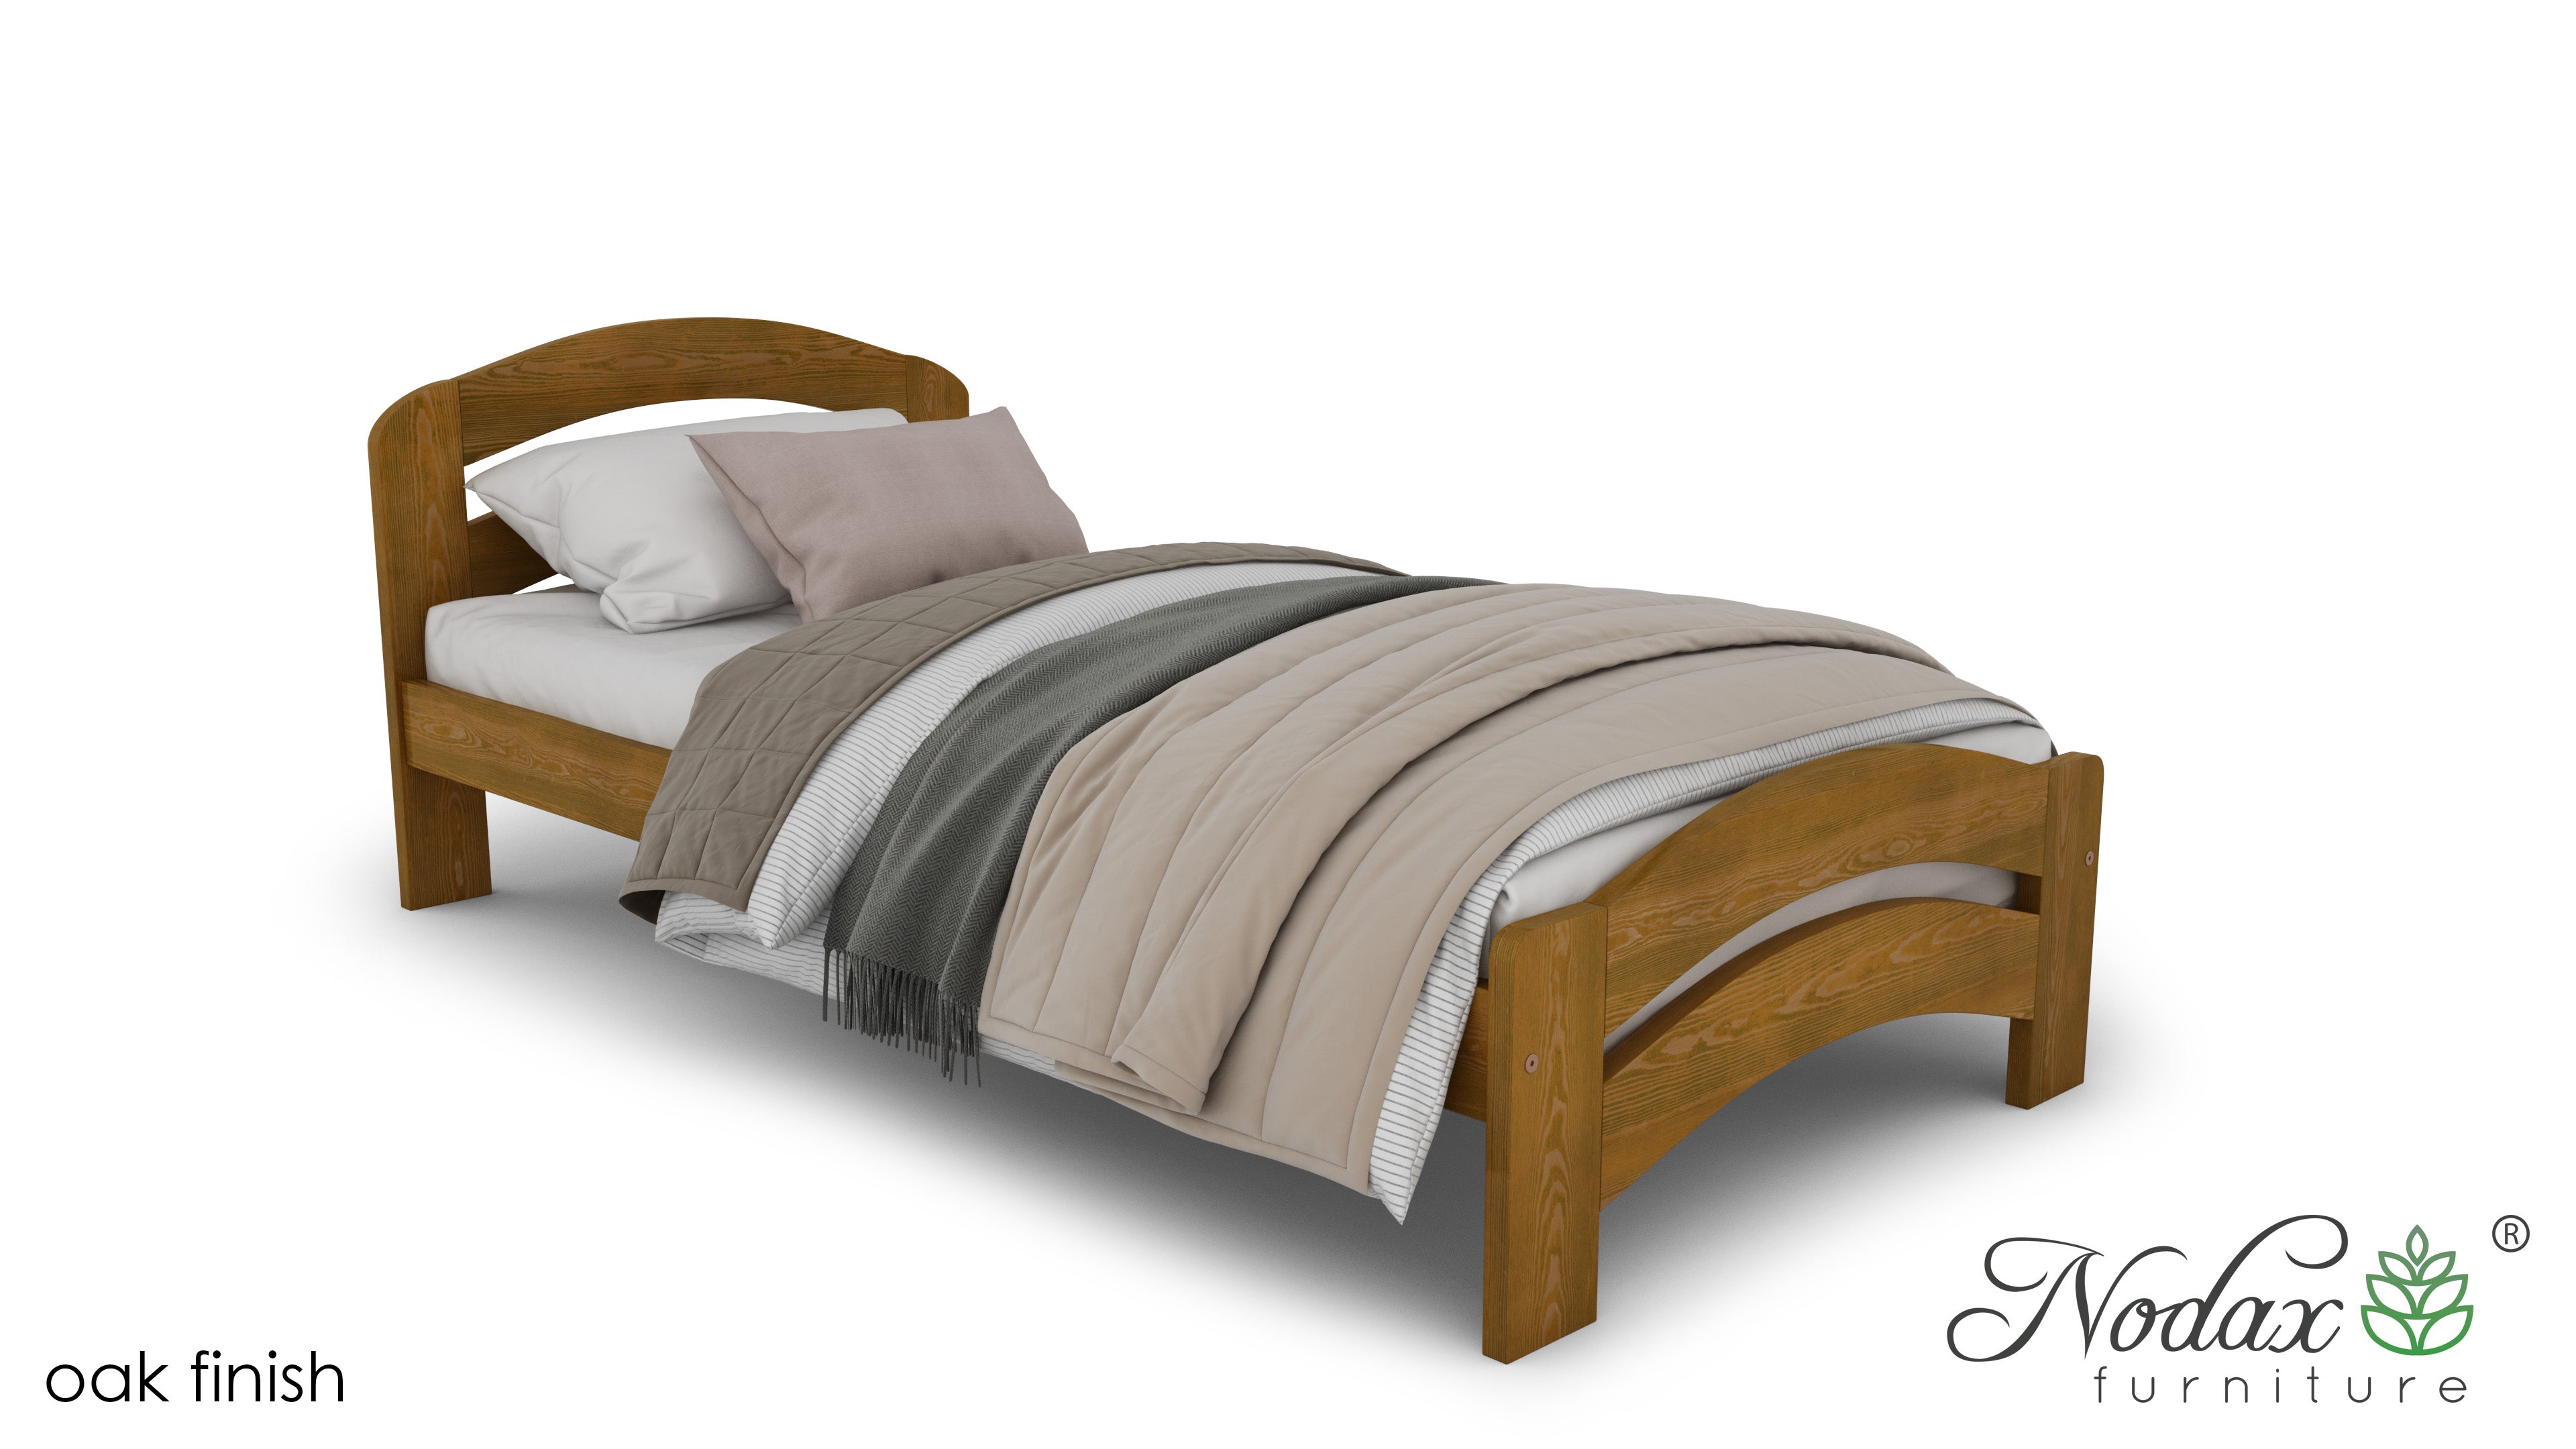 Wooden-bed-frame-beds-online-Dala